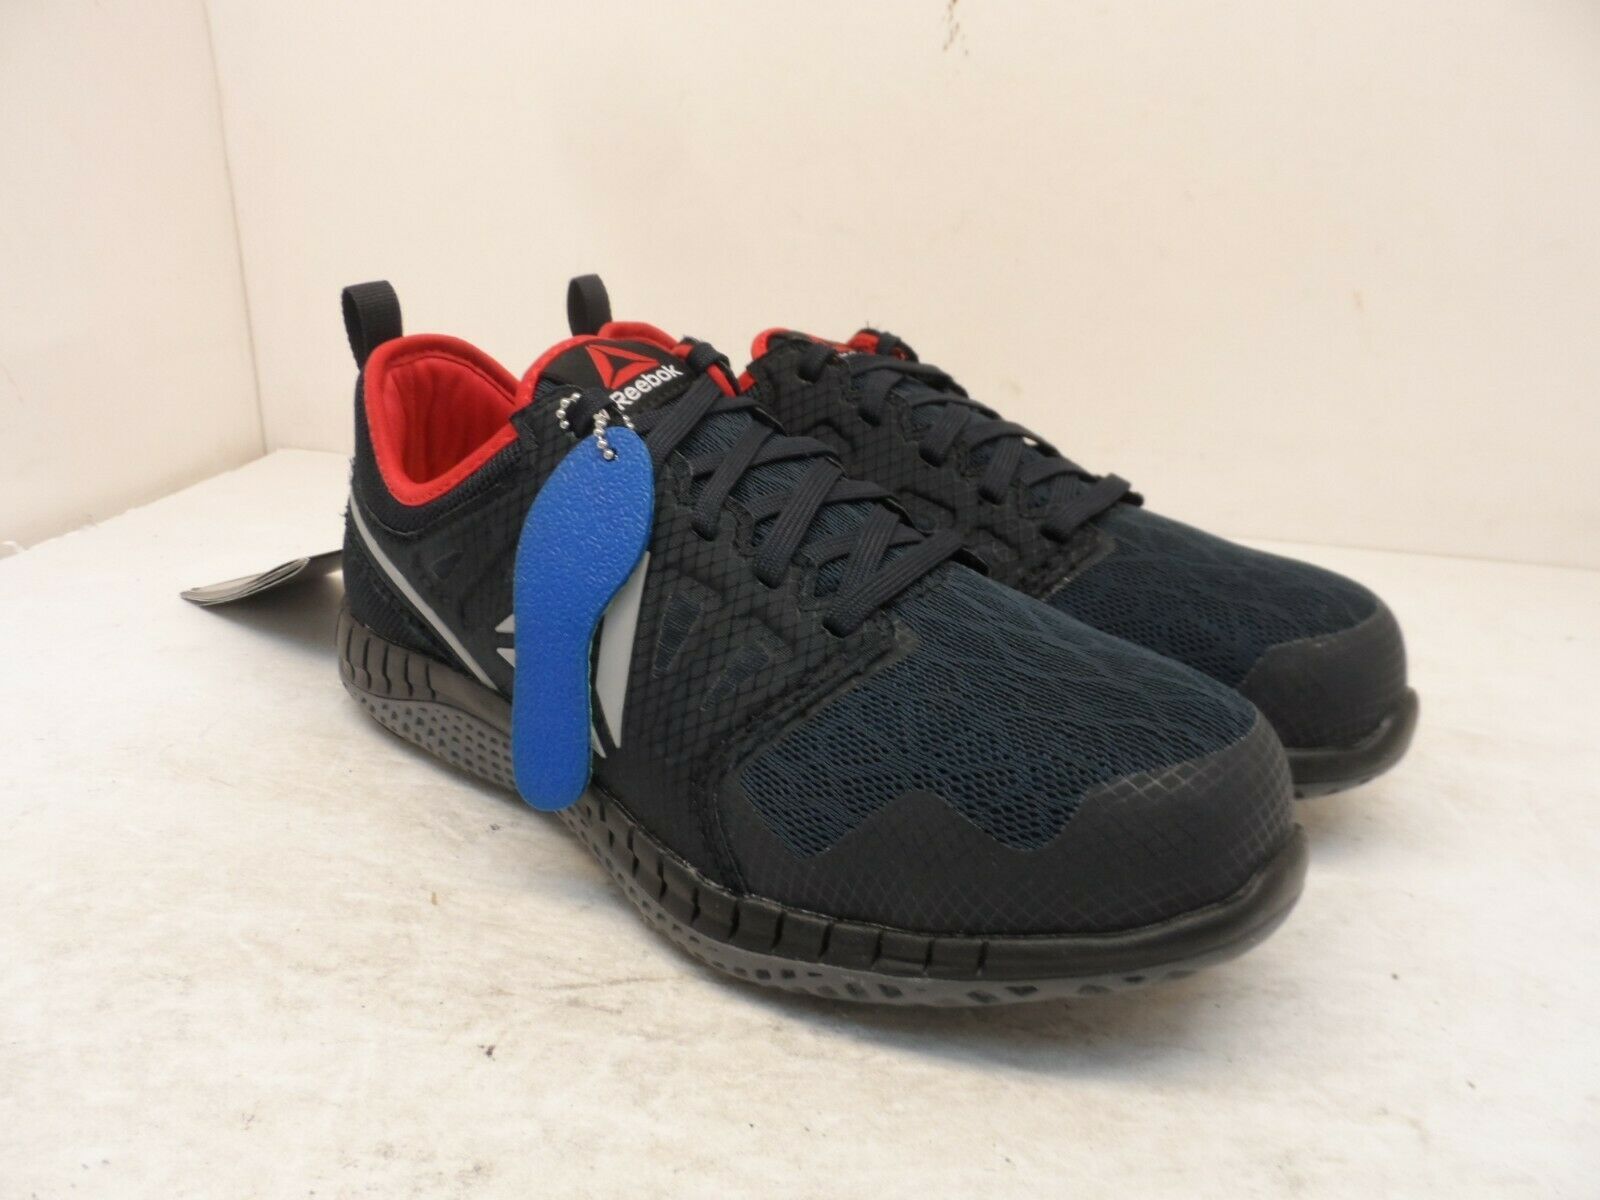 Reebok Work Boy's Low Zprint EH SR Steel Toe Athletic Work Shoes Navy Size 6M - $56.99